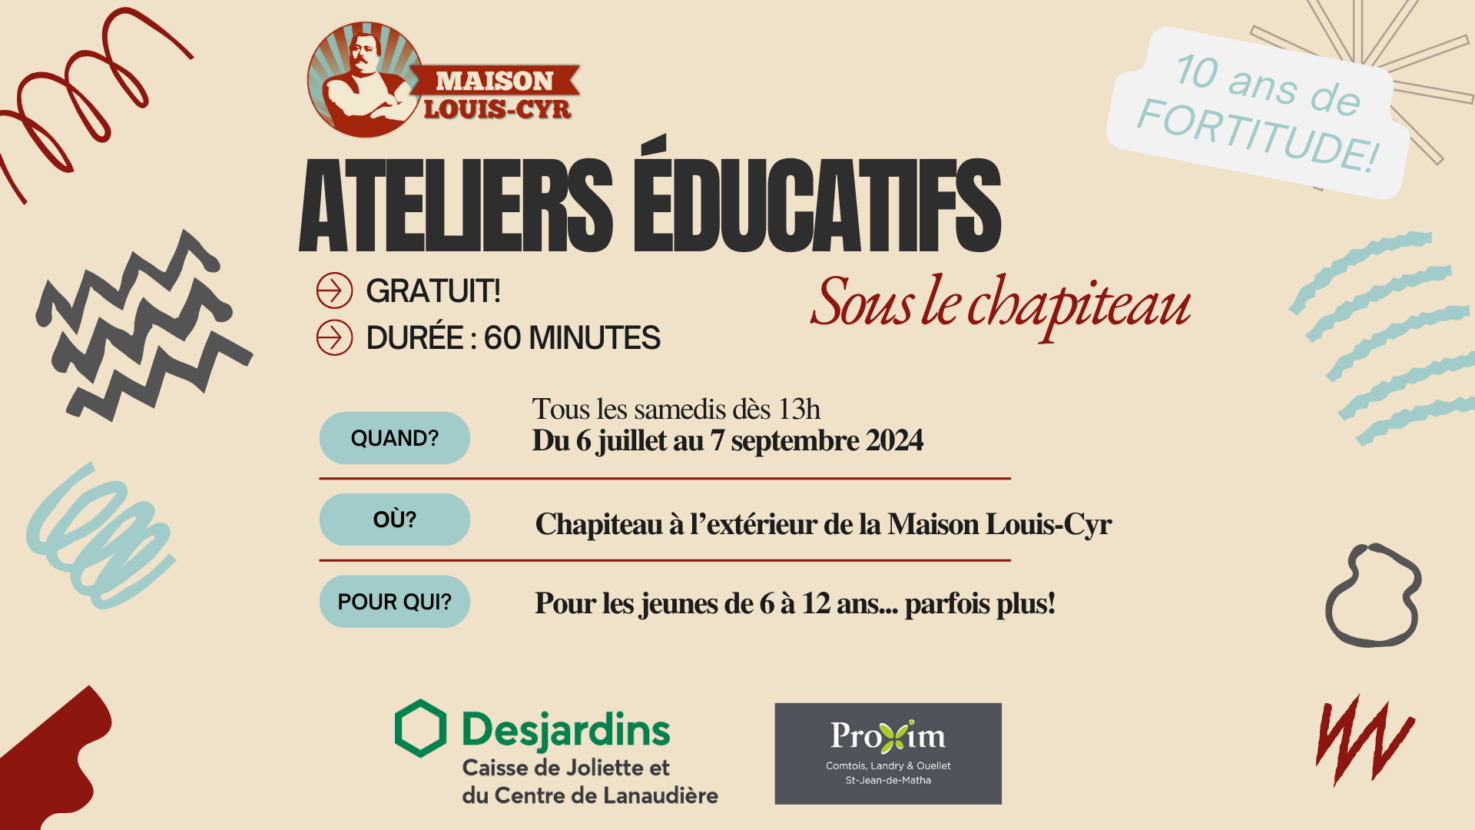 Maison Louis-Cyr/Ateliers éducatifs 2024